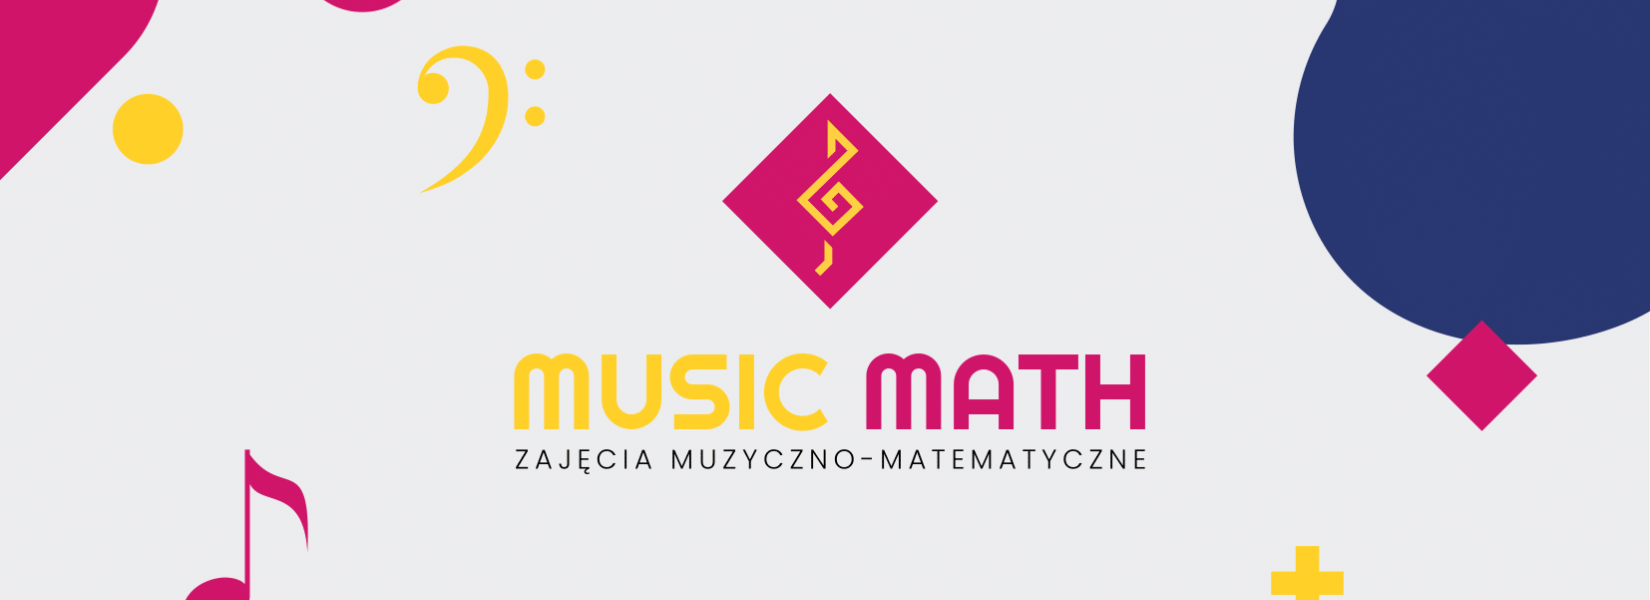 Zajęcia muzyczno-matematyczne dla dzieci | MUSIC MATH